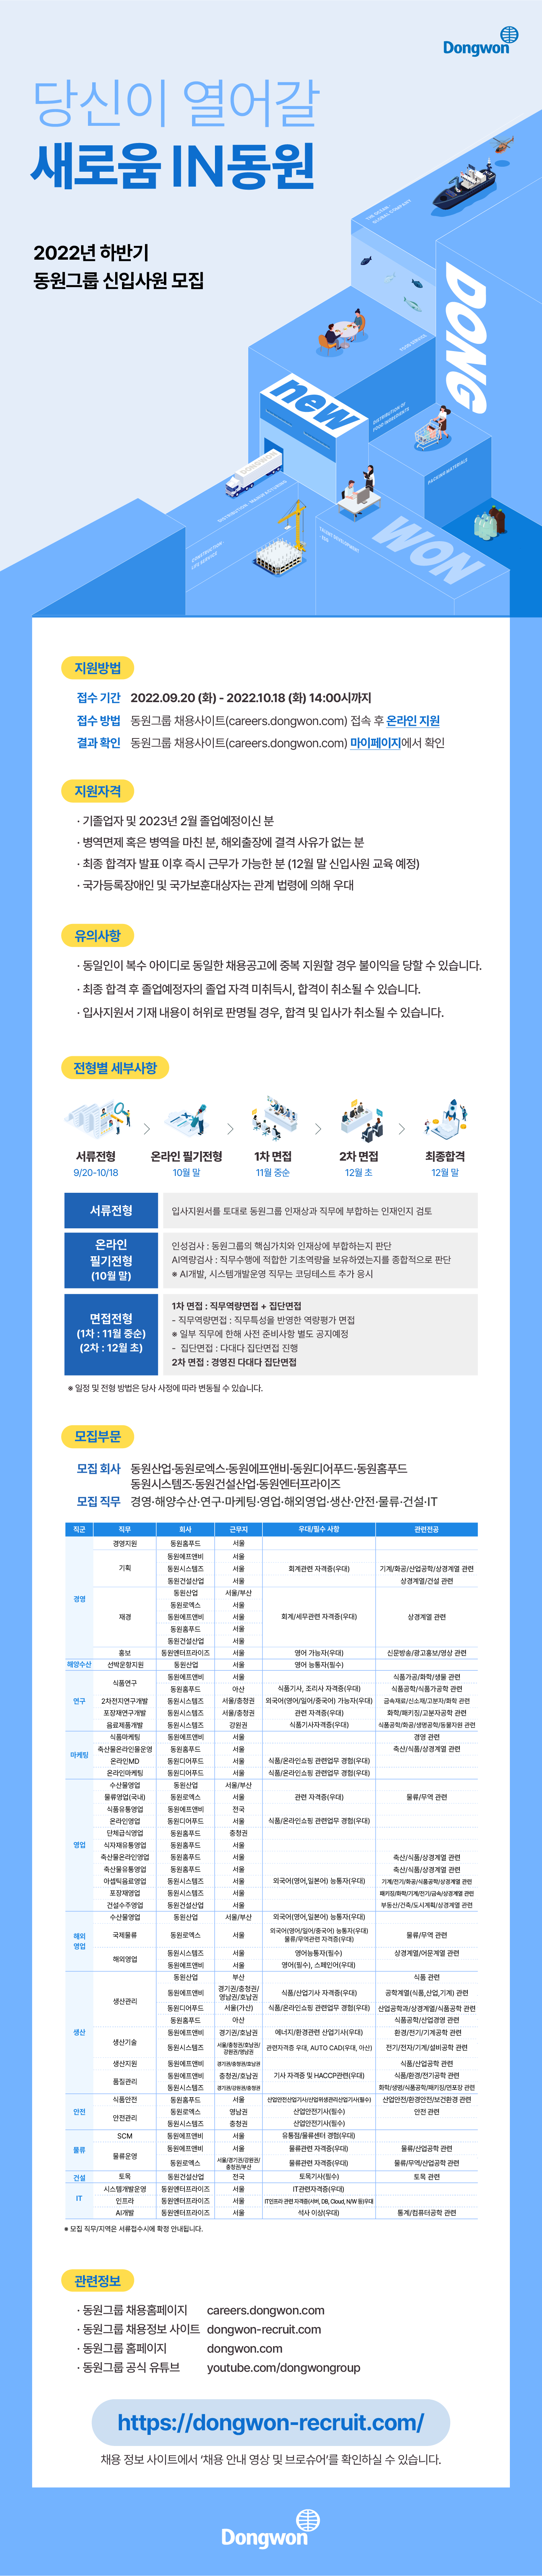 22하_동원그룹_웹플라이어_0920_최종.png